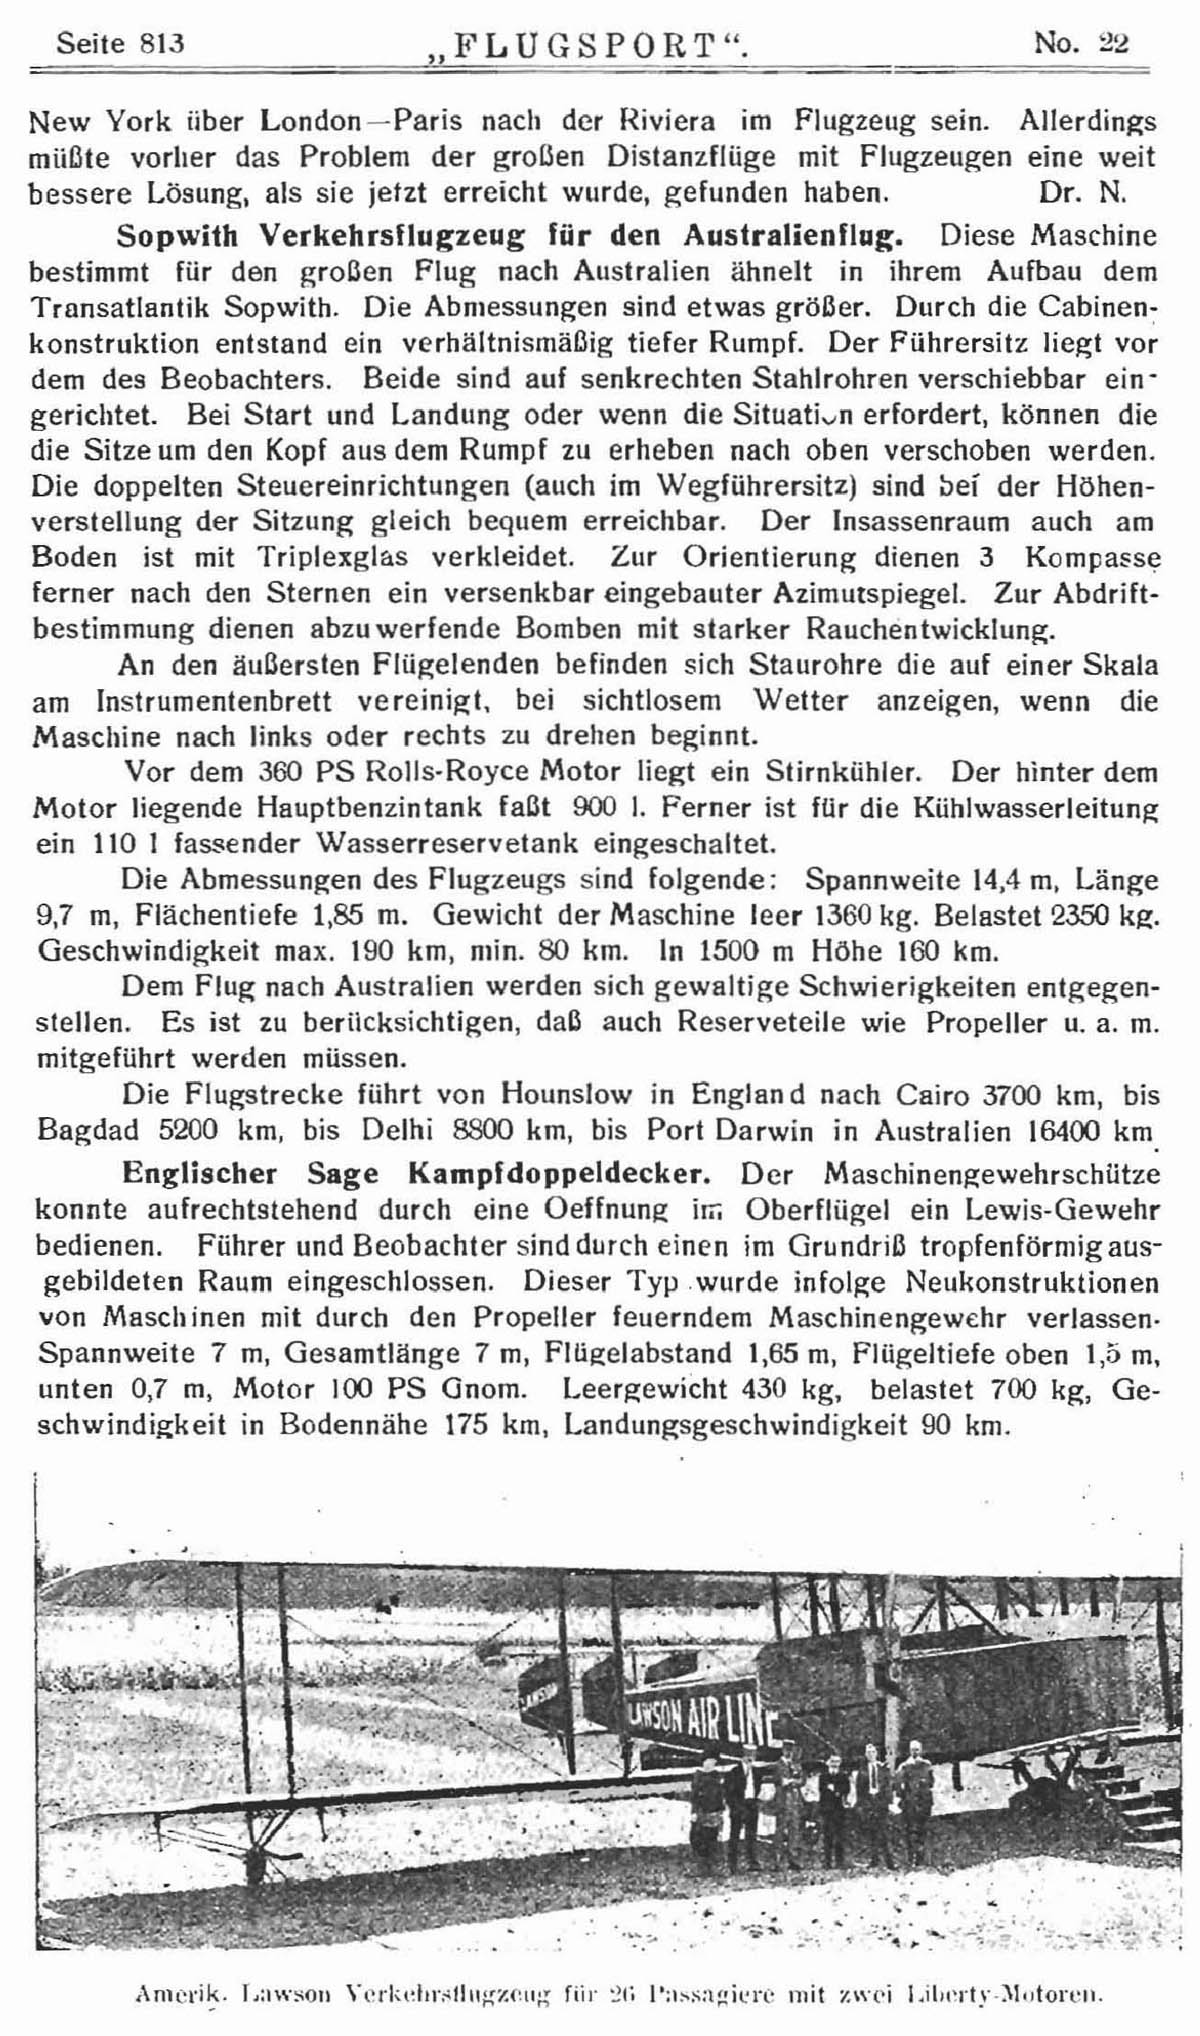 Leseprobe Zeitschrift Flugsport vom 29. Oktober 1919